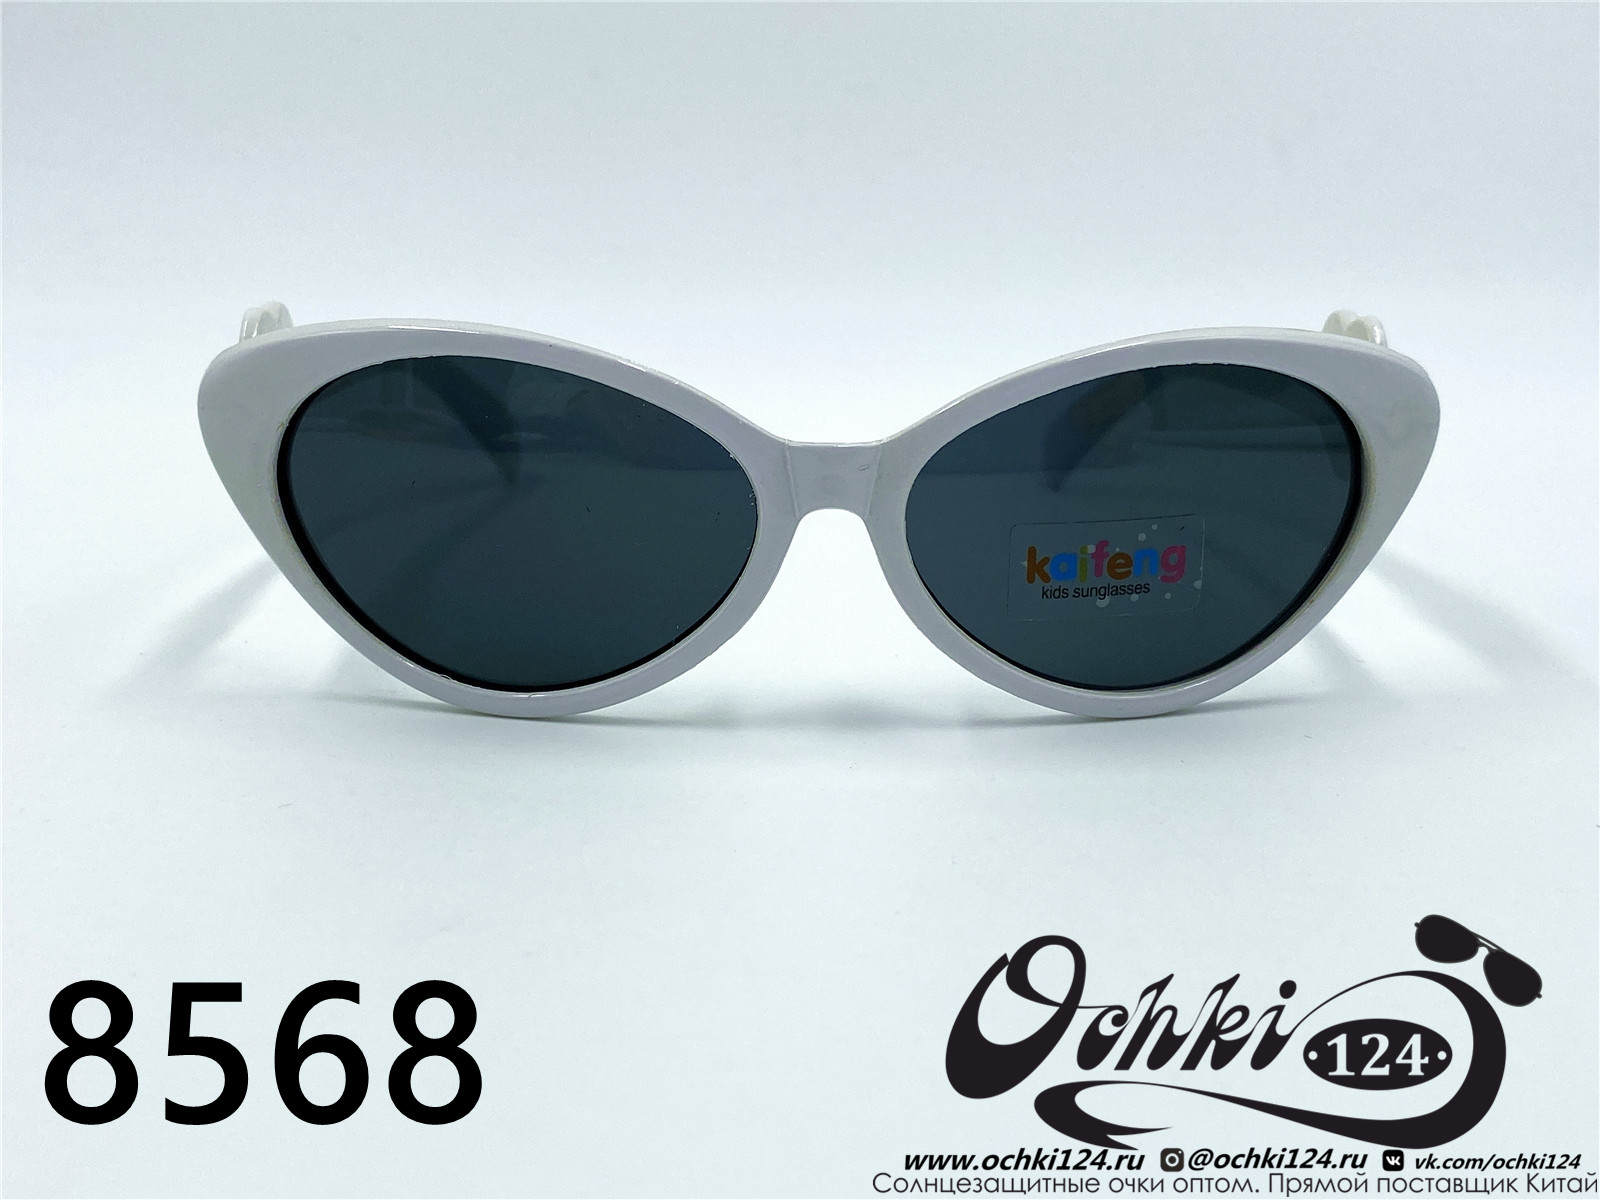  Солнцезащитные очки картинка 2022 Детские Геометрические формы  8568-2 